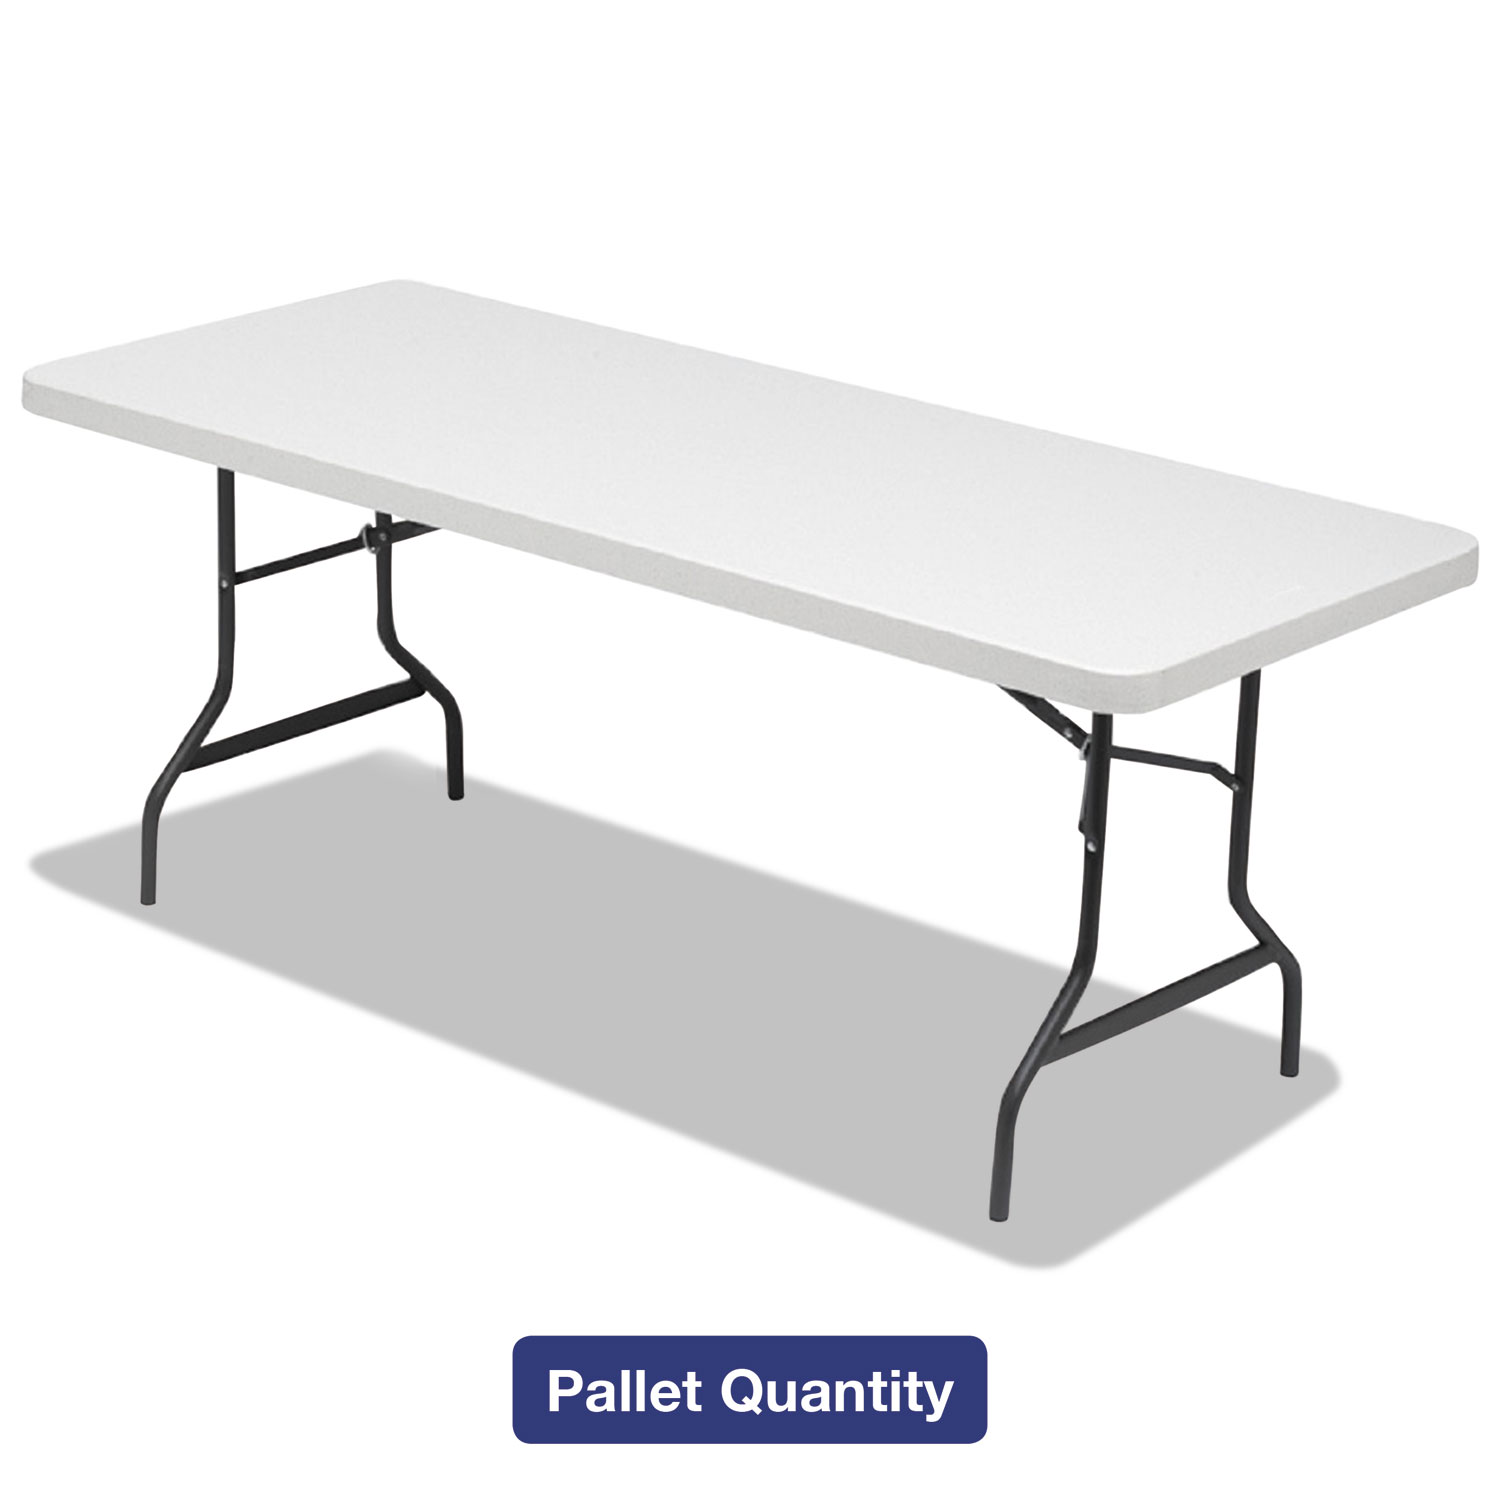  Alera 65620 Folding Table, 72w x 30d x 29h, Platinum/Charcoal, 15/Pallet (ALE65620) 